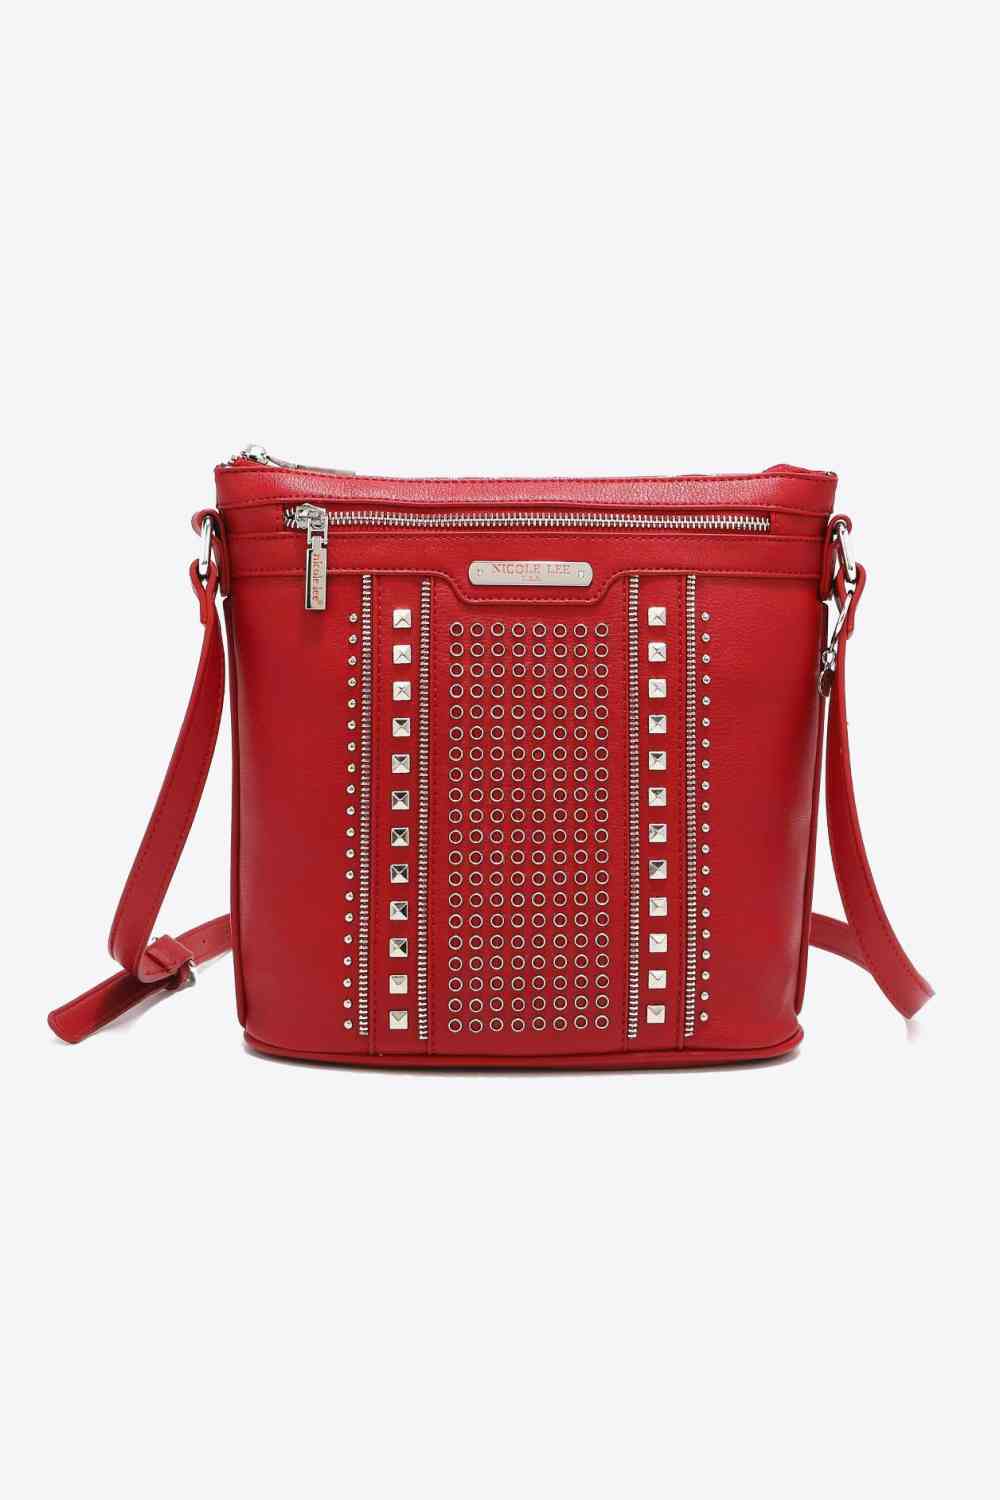 Nicole Lee USA Love Handbag - BEYOND FASHION